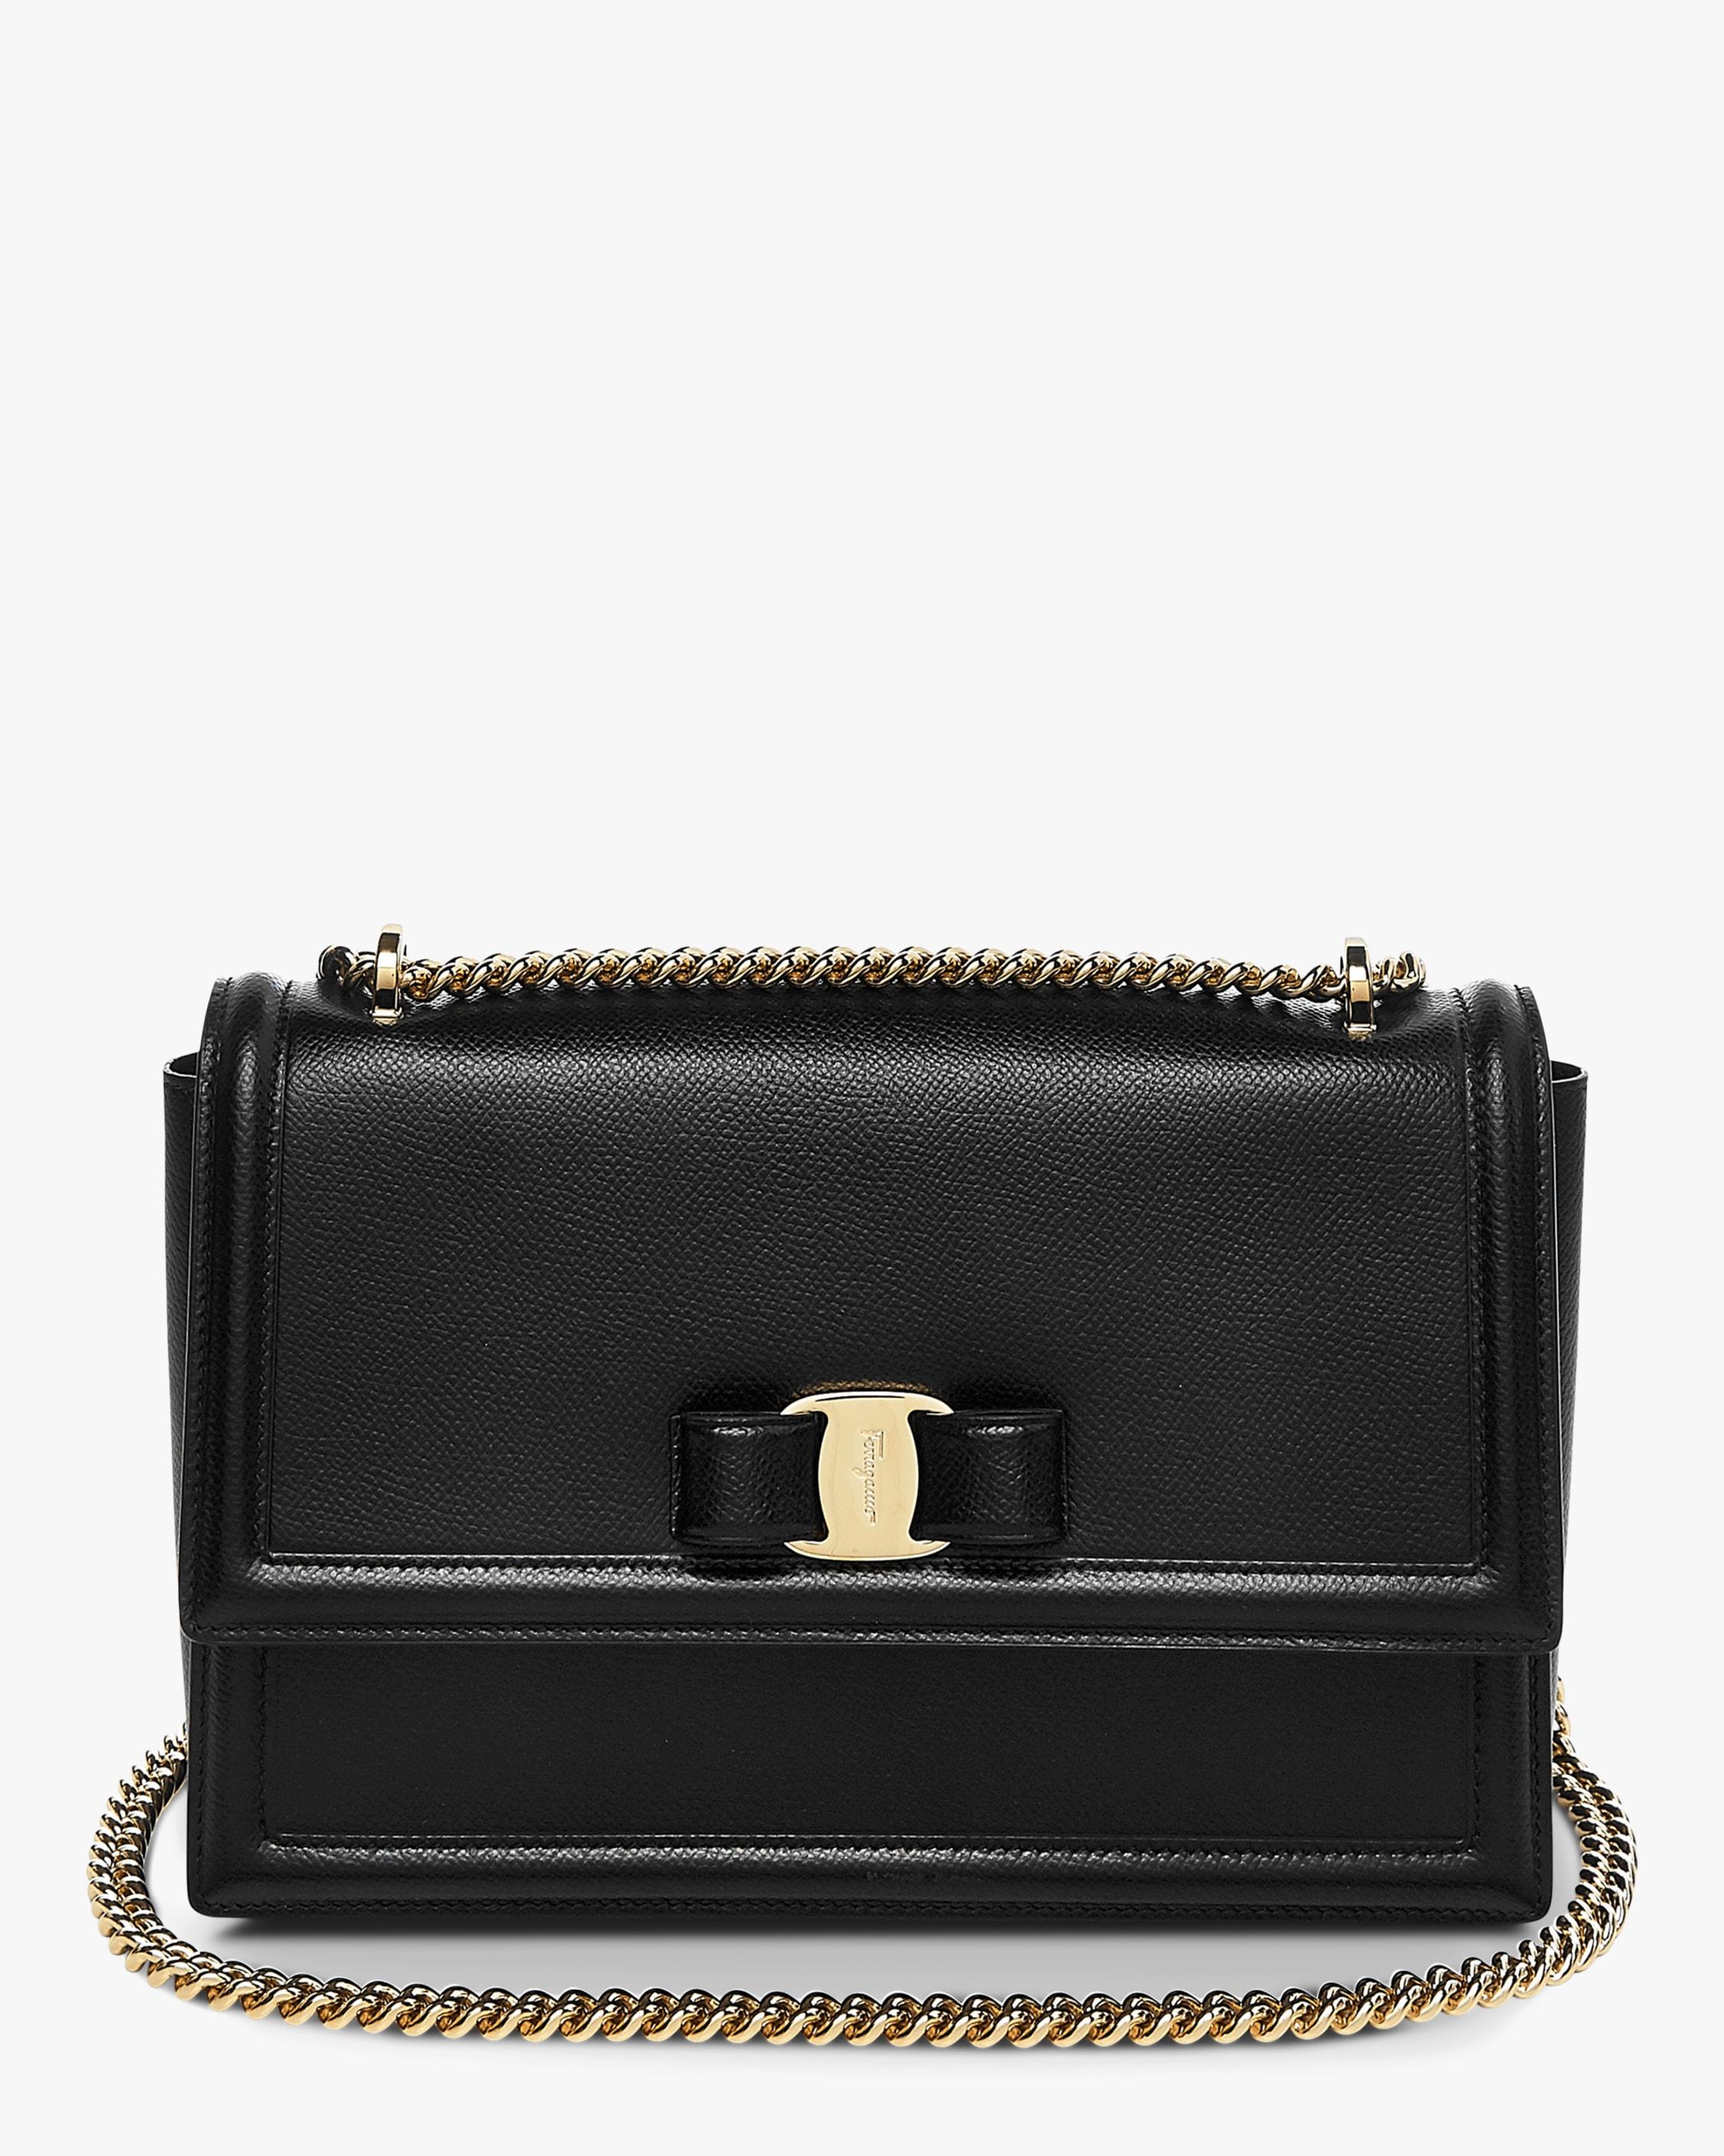 Ferragamo Leather Ginny Medium Shoulder Bag in Nero (Black) - Lyst